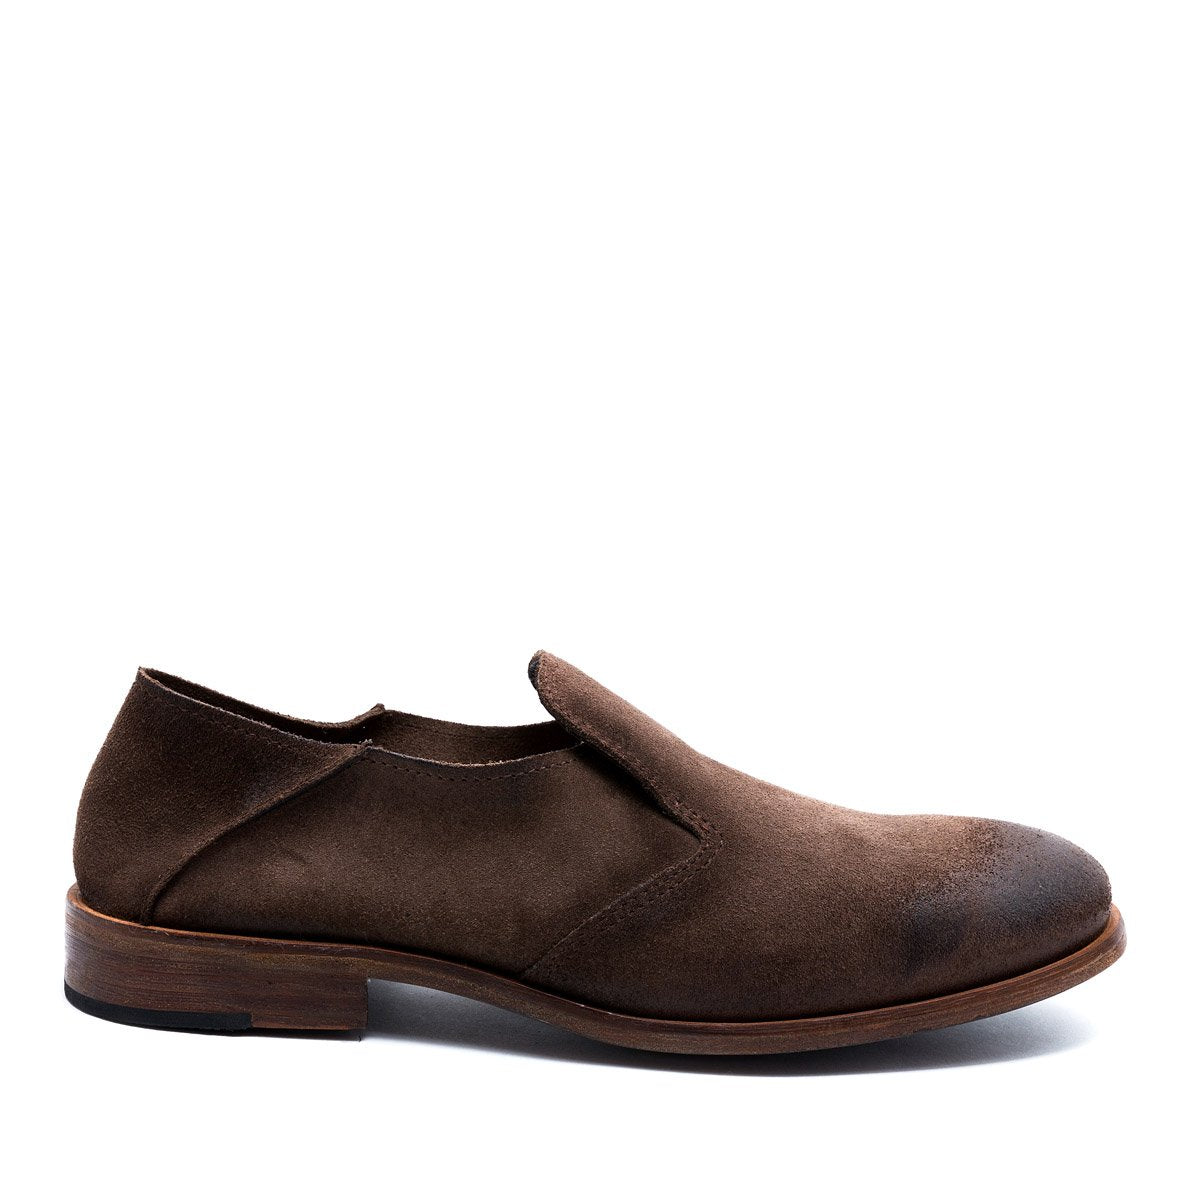 Saxon Vison - Suede Leather Shoes